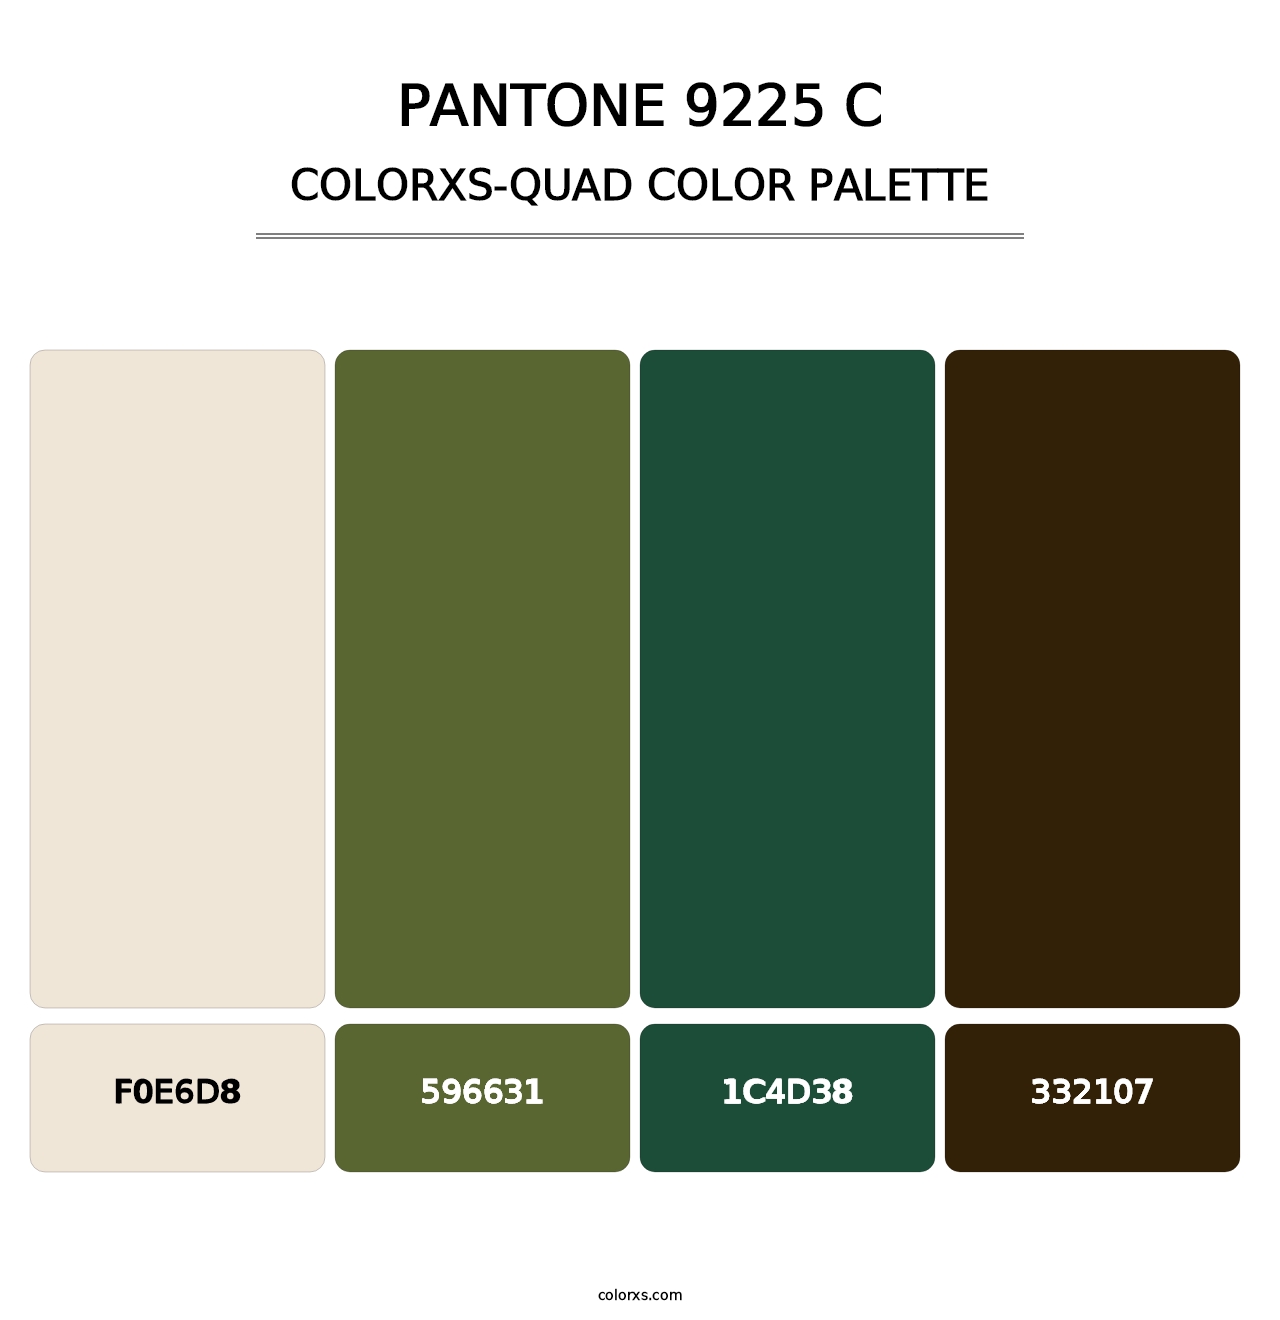 PANTONE 9225 C - Colorxs Quad Palette